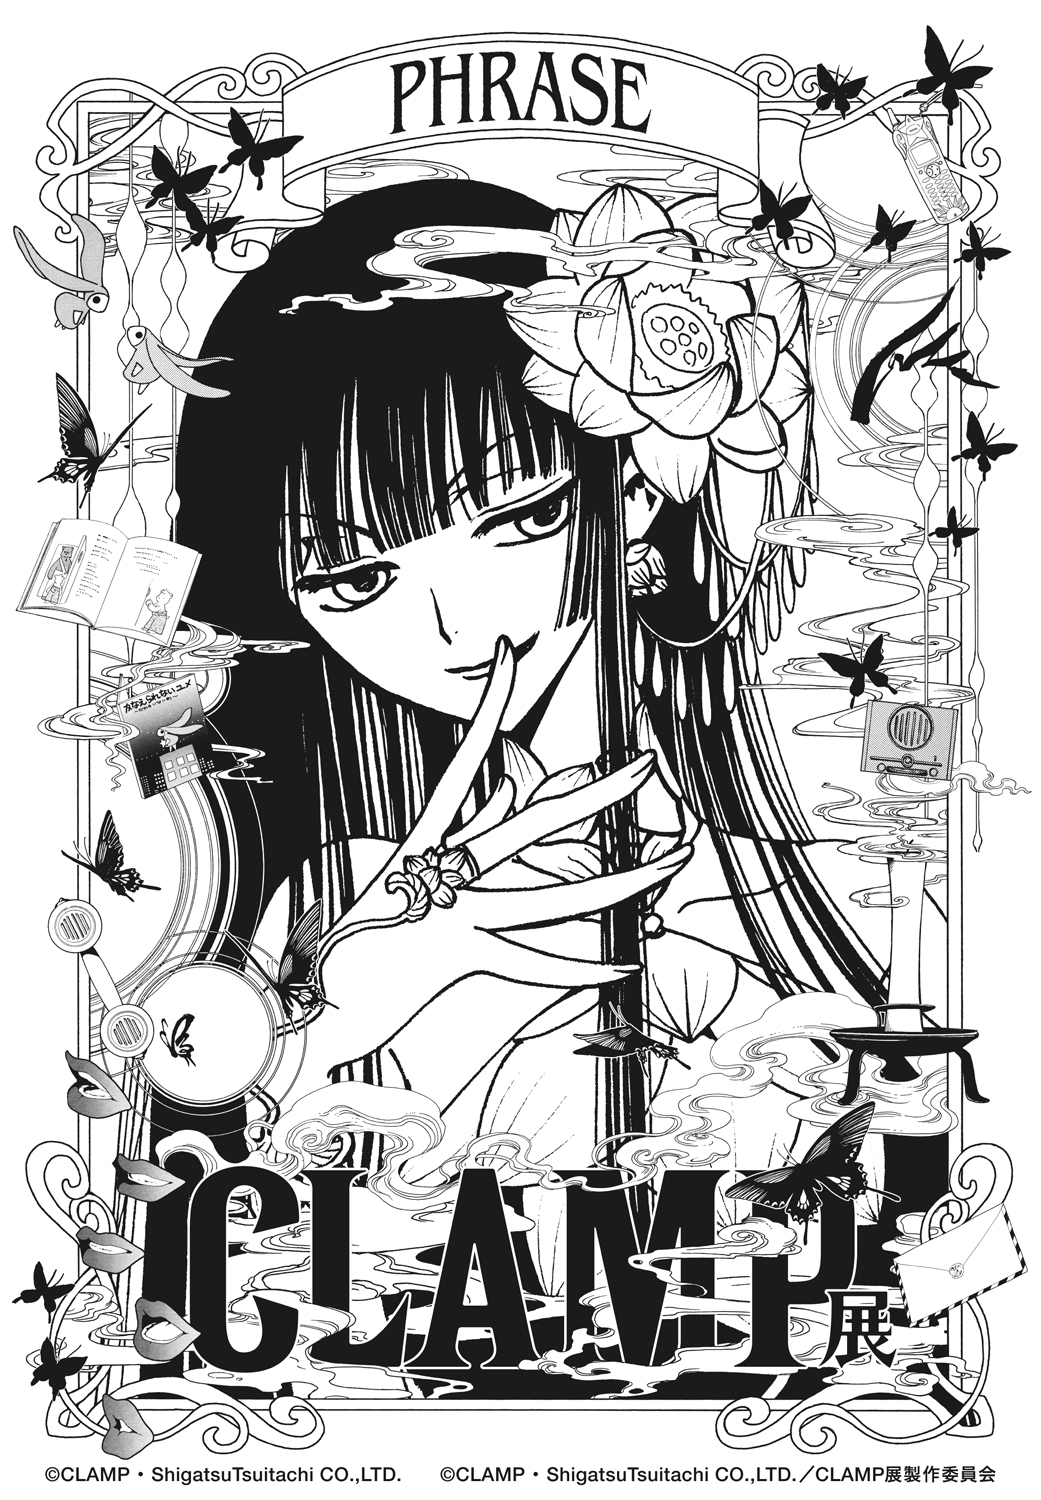 CLAMP展 | 「P」は、PHRASE。CLAMPが紡ぐ、言葉の数々。 | ©CLAMP・ShigatsuTsuitachi CO.,LTD. ©CLAMP・ShigatsuTsuitachi CO.,LTD. / CLAMP展製作委員会